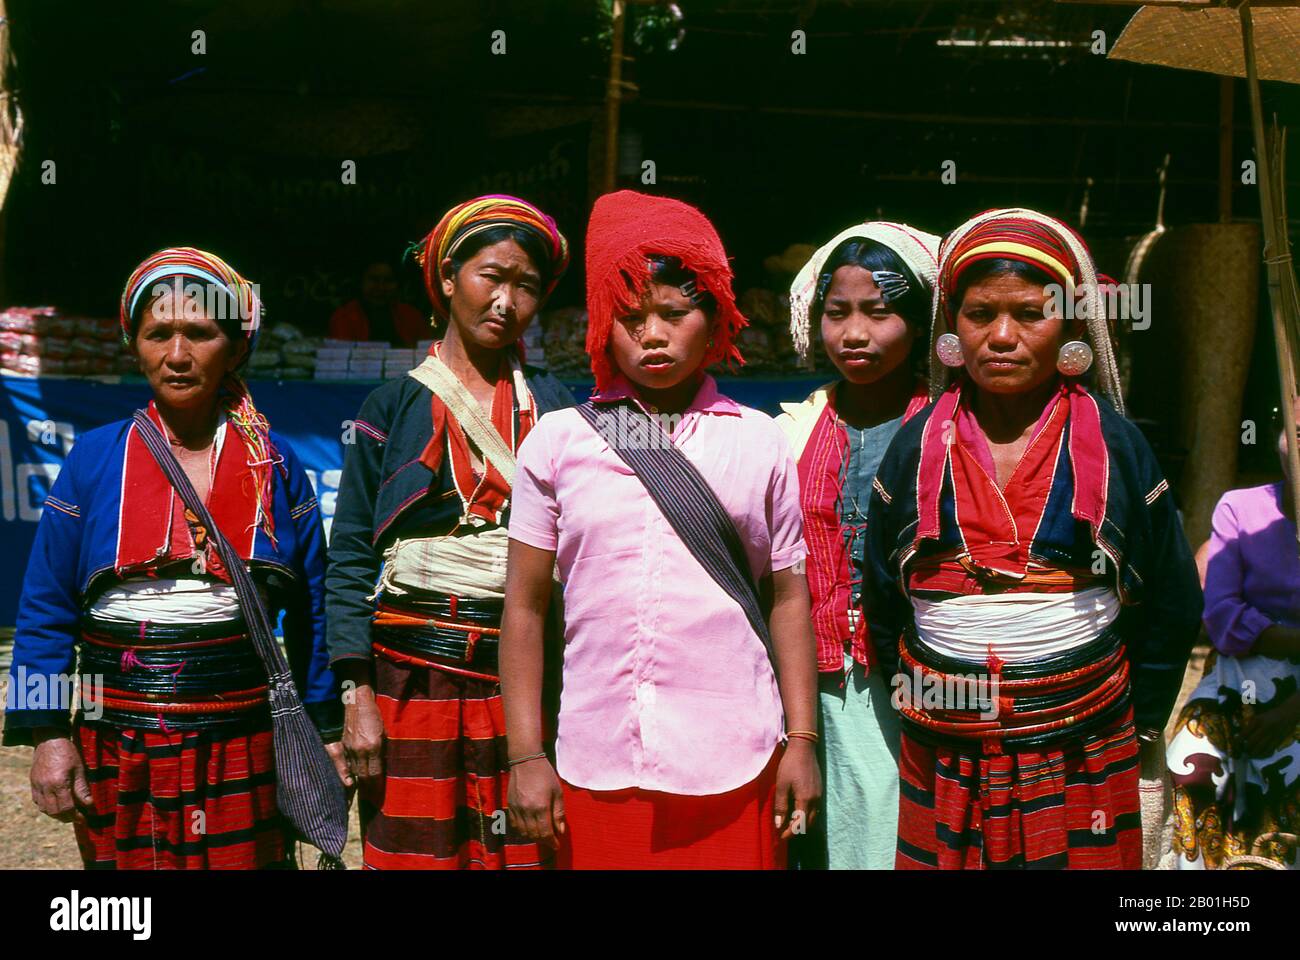 Birma/Myanmar: Palaung-Frauen (bekannt für ihre hölzernen Taillenbänder) auf einem Markt in Pindaya, Birma. Die Palaung ist eine ethnische Minderheit, die im Norden Birmas beheimatet ist, aber auch in Thailand und in der chinesischen Provinz Yunnan Einwohner hat. Die Palaung lebt überwiegend im Staat Shan und hat etwa 500.000 Einwohner. Stockfoto